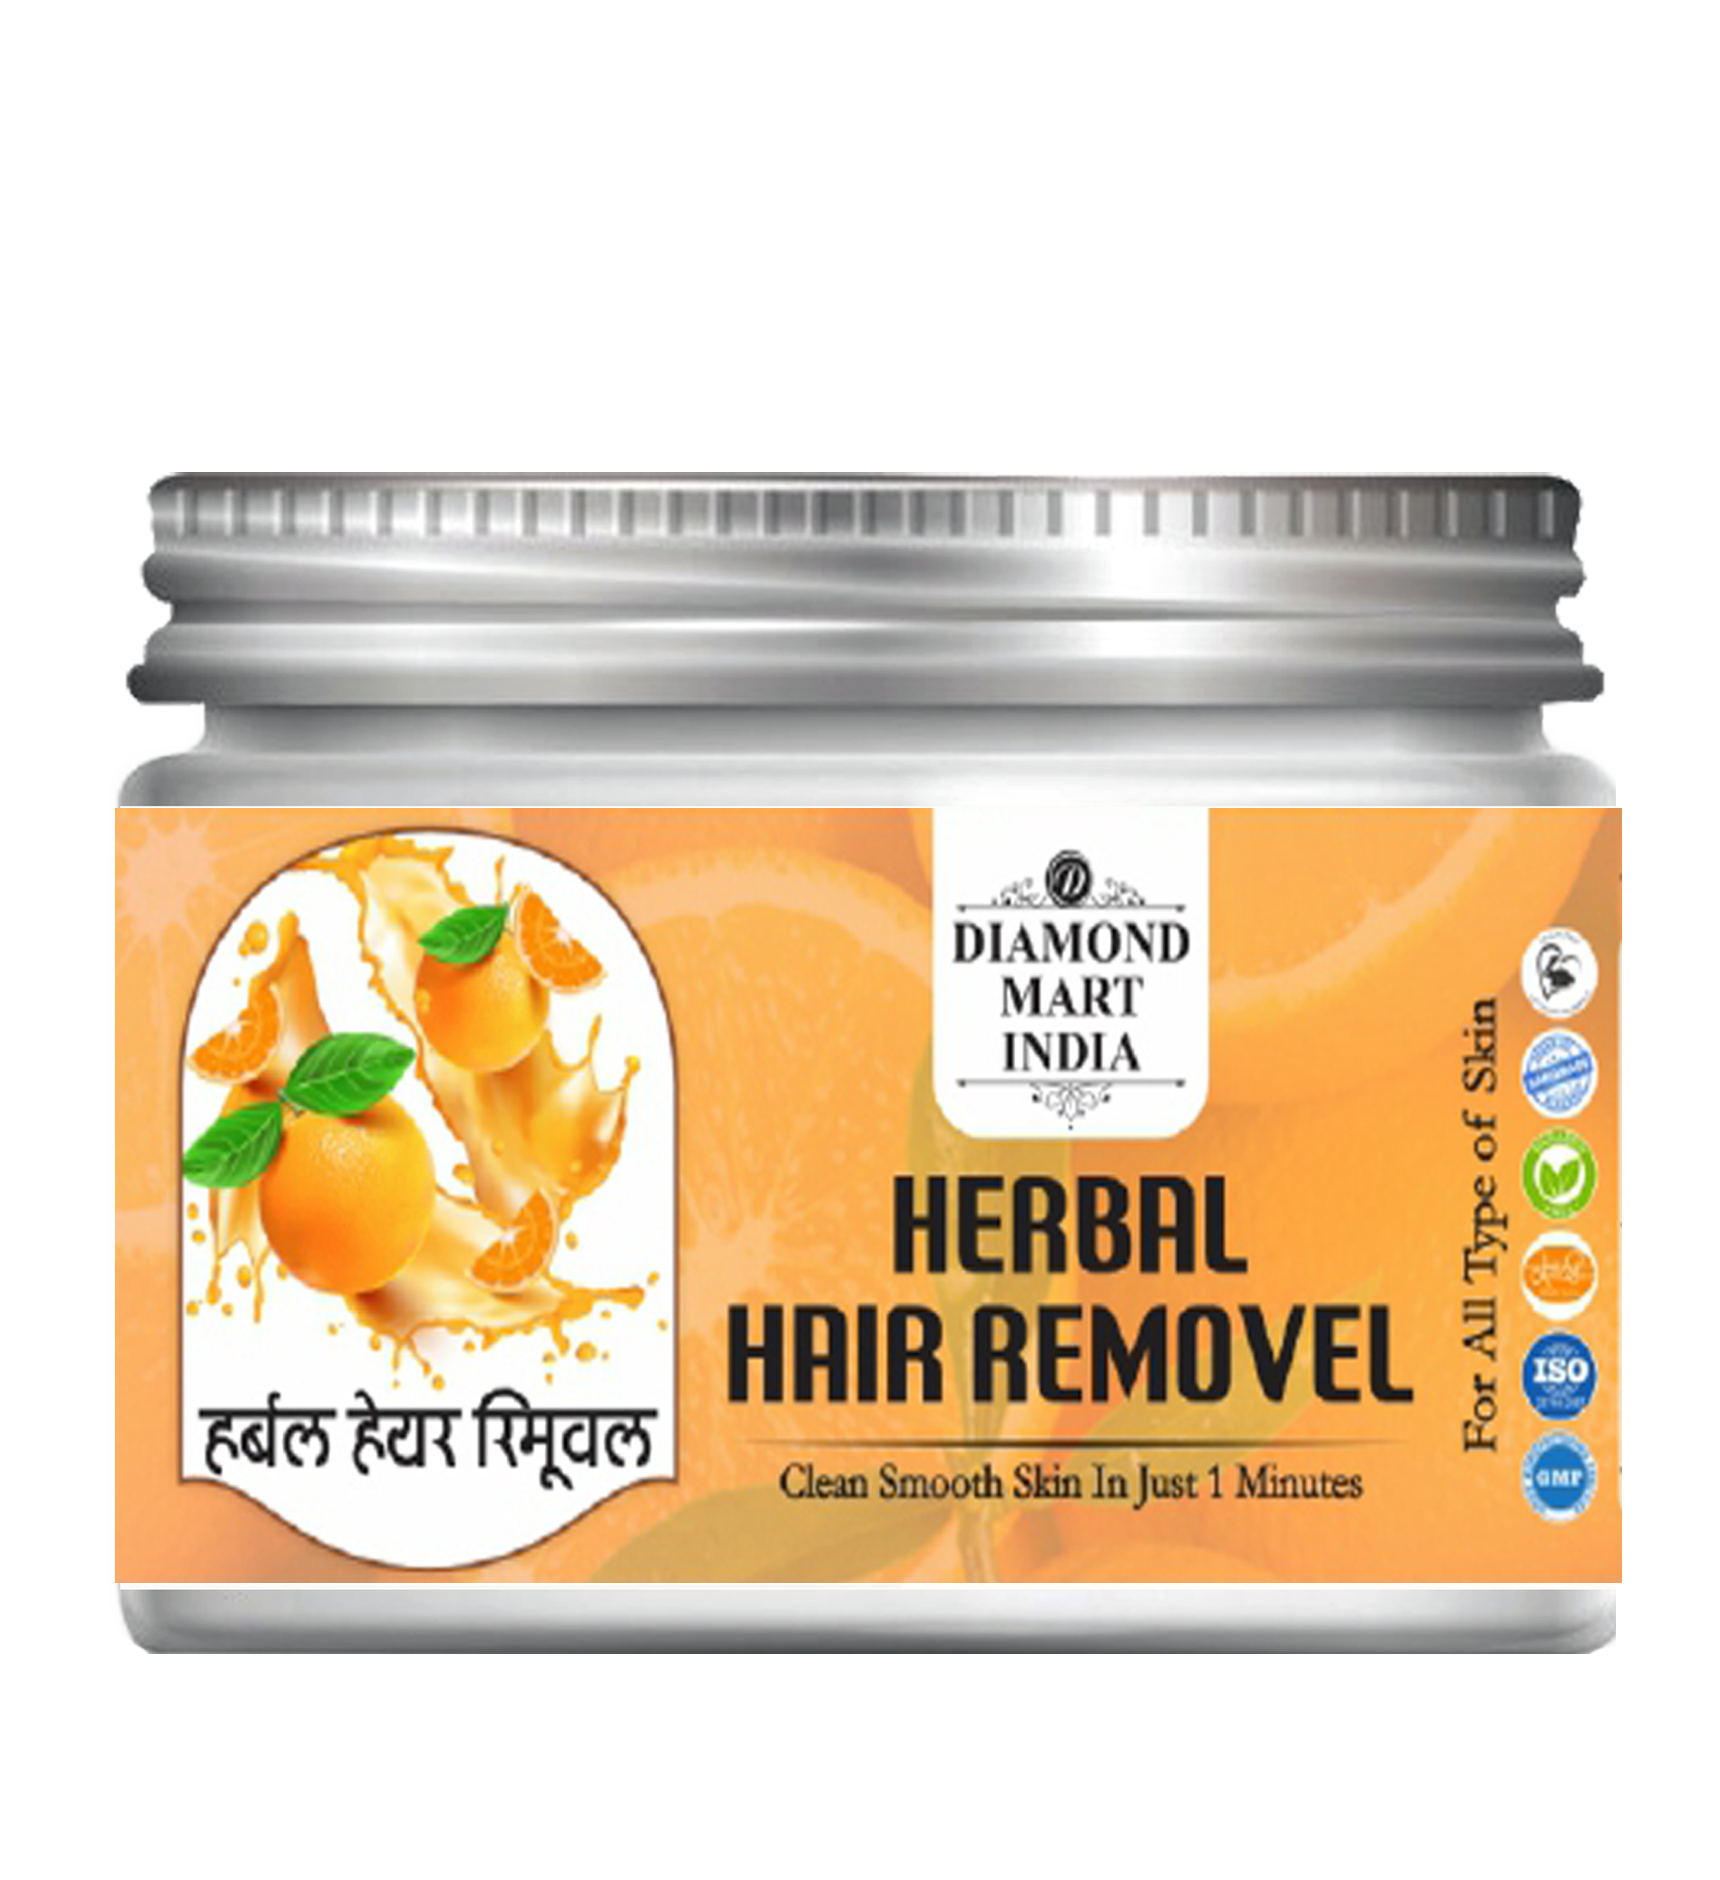 Herbal Hair Removal